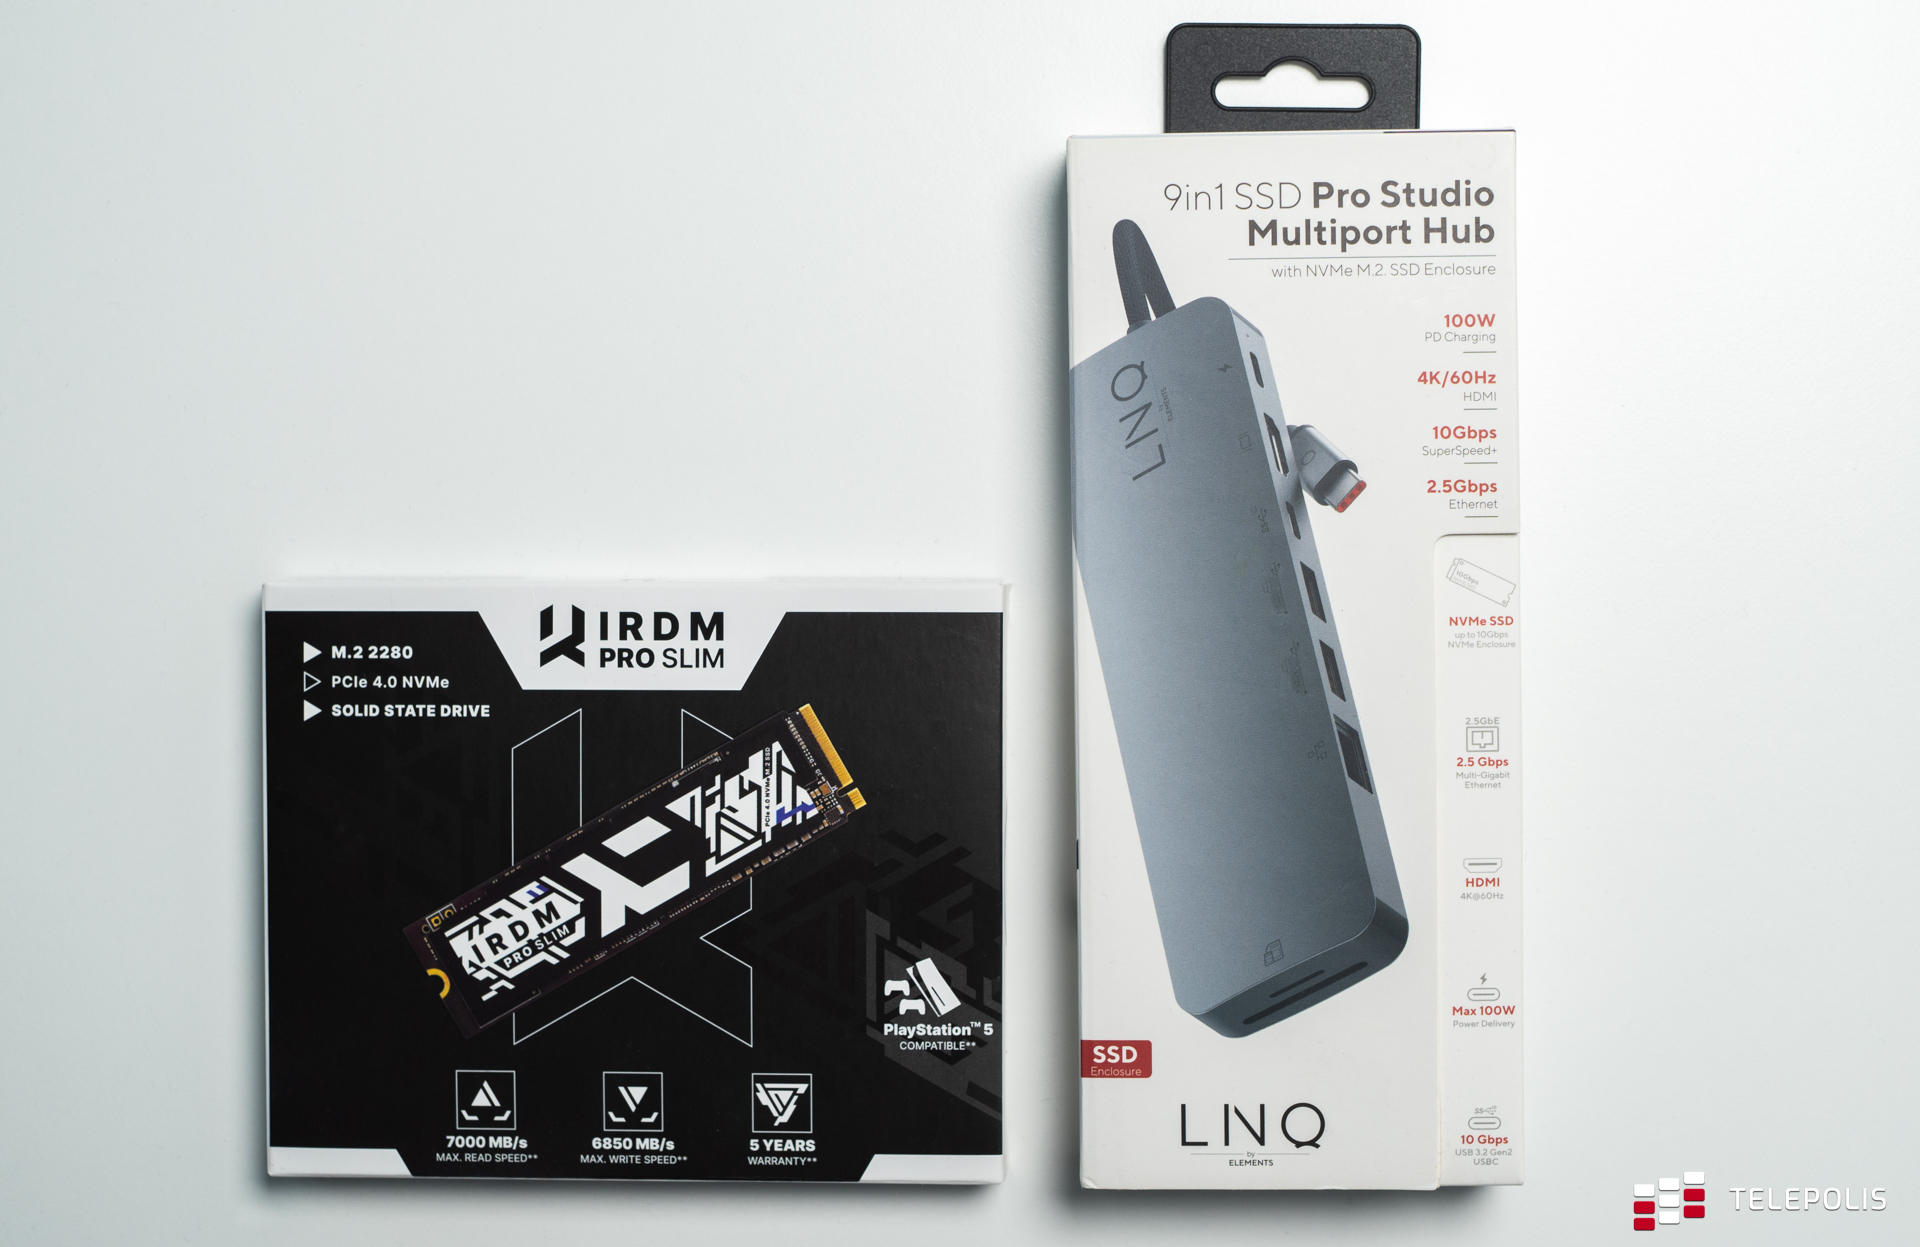 LINQ 9in1 SSD Pro Studio - dodatkowy dysk twardy